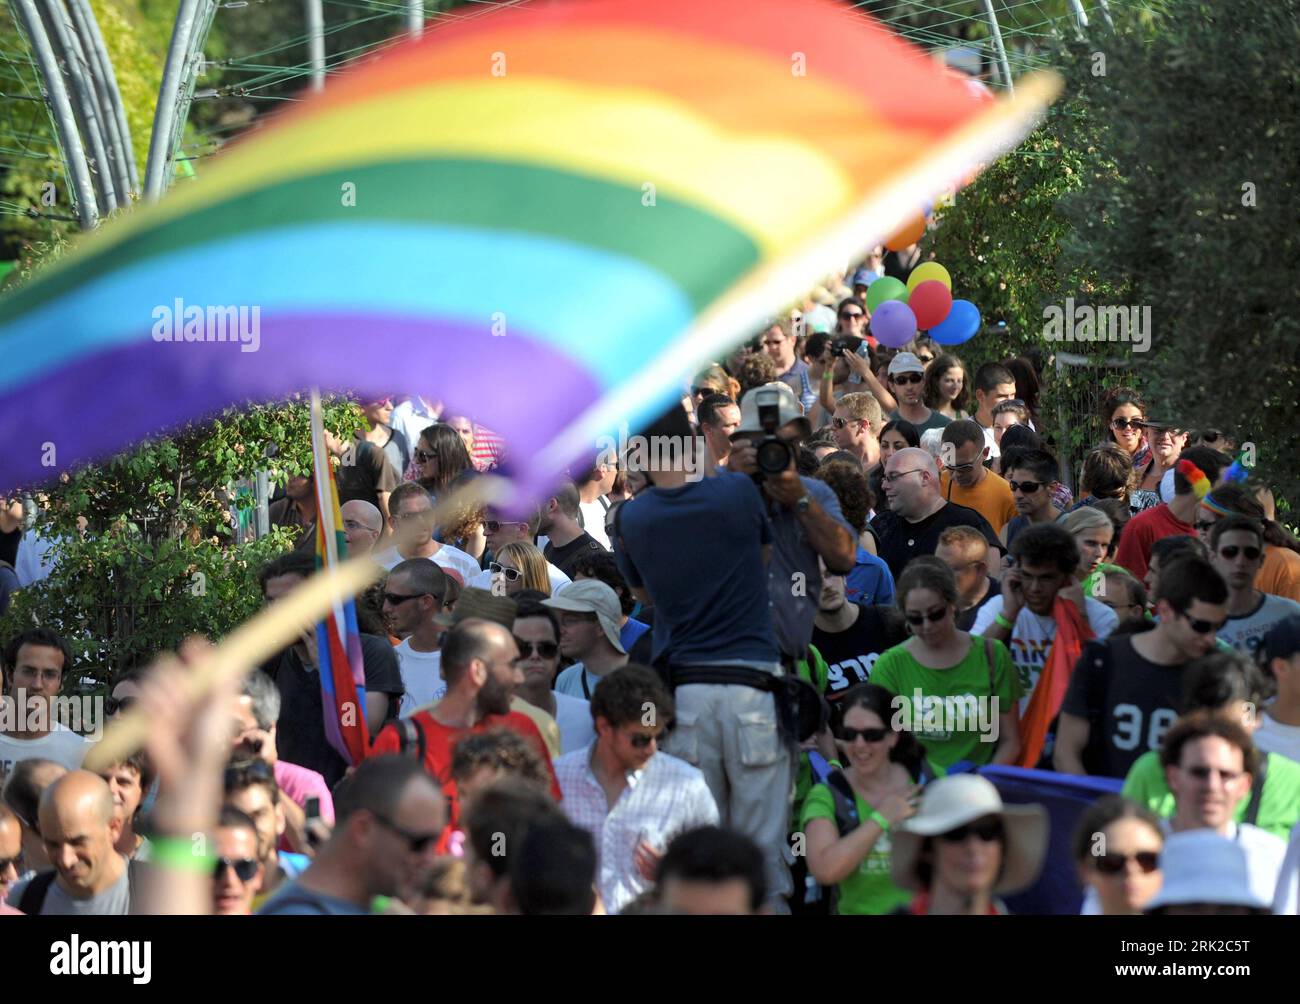 Bildnummer: 53160573  Datum: 25.06.2009  Copyright: imago/Xinhua Wehende Regenbogenfahne während der jährlichen Gay Pride Parade in Jerusalem - PUBLICATIONxNOTxINxCHN Wehende Regenbogenfahne während der jährlichen Gay Pride Parade in Jerusalem - PUBLICATIONxNOTxINxCHN, Personen; 2009, Jerusalem, Fahne, Flagge, Regenbogen, Schwule, Lesben, schwul, lesbisch, Homosexualität, homosexuell, Demonstrant, Demonstrationen; , quer, Kbdig, Totale,  , Politik, Asien    Bildnummer 53160573 Date 25 06 2009 Copyright Imago XINHUA Wehende Rainbow flag during the annual Gay Pride Parade in Jerusalem PUBLICATIO Stock Photo